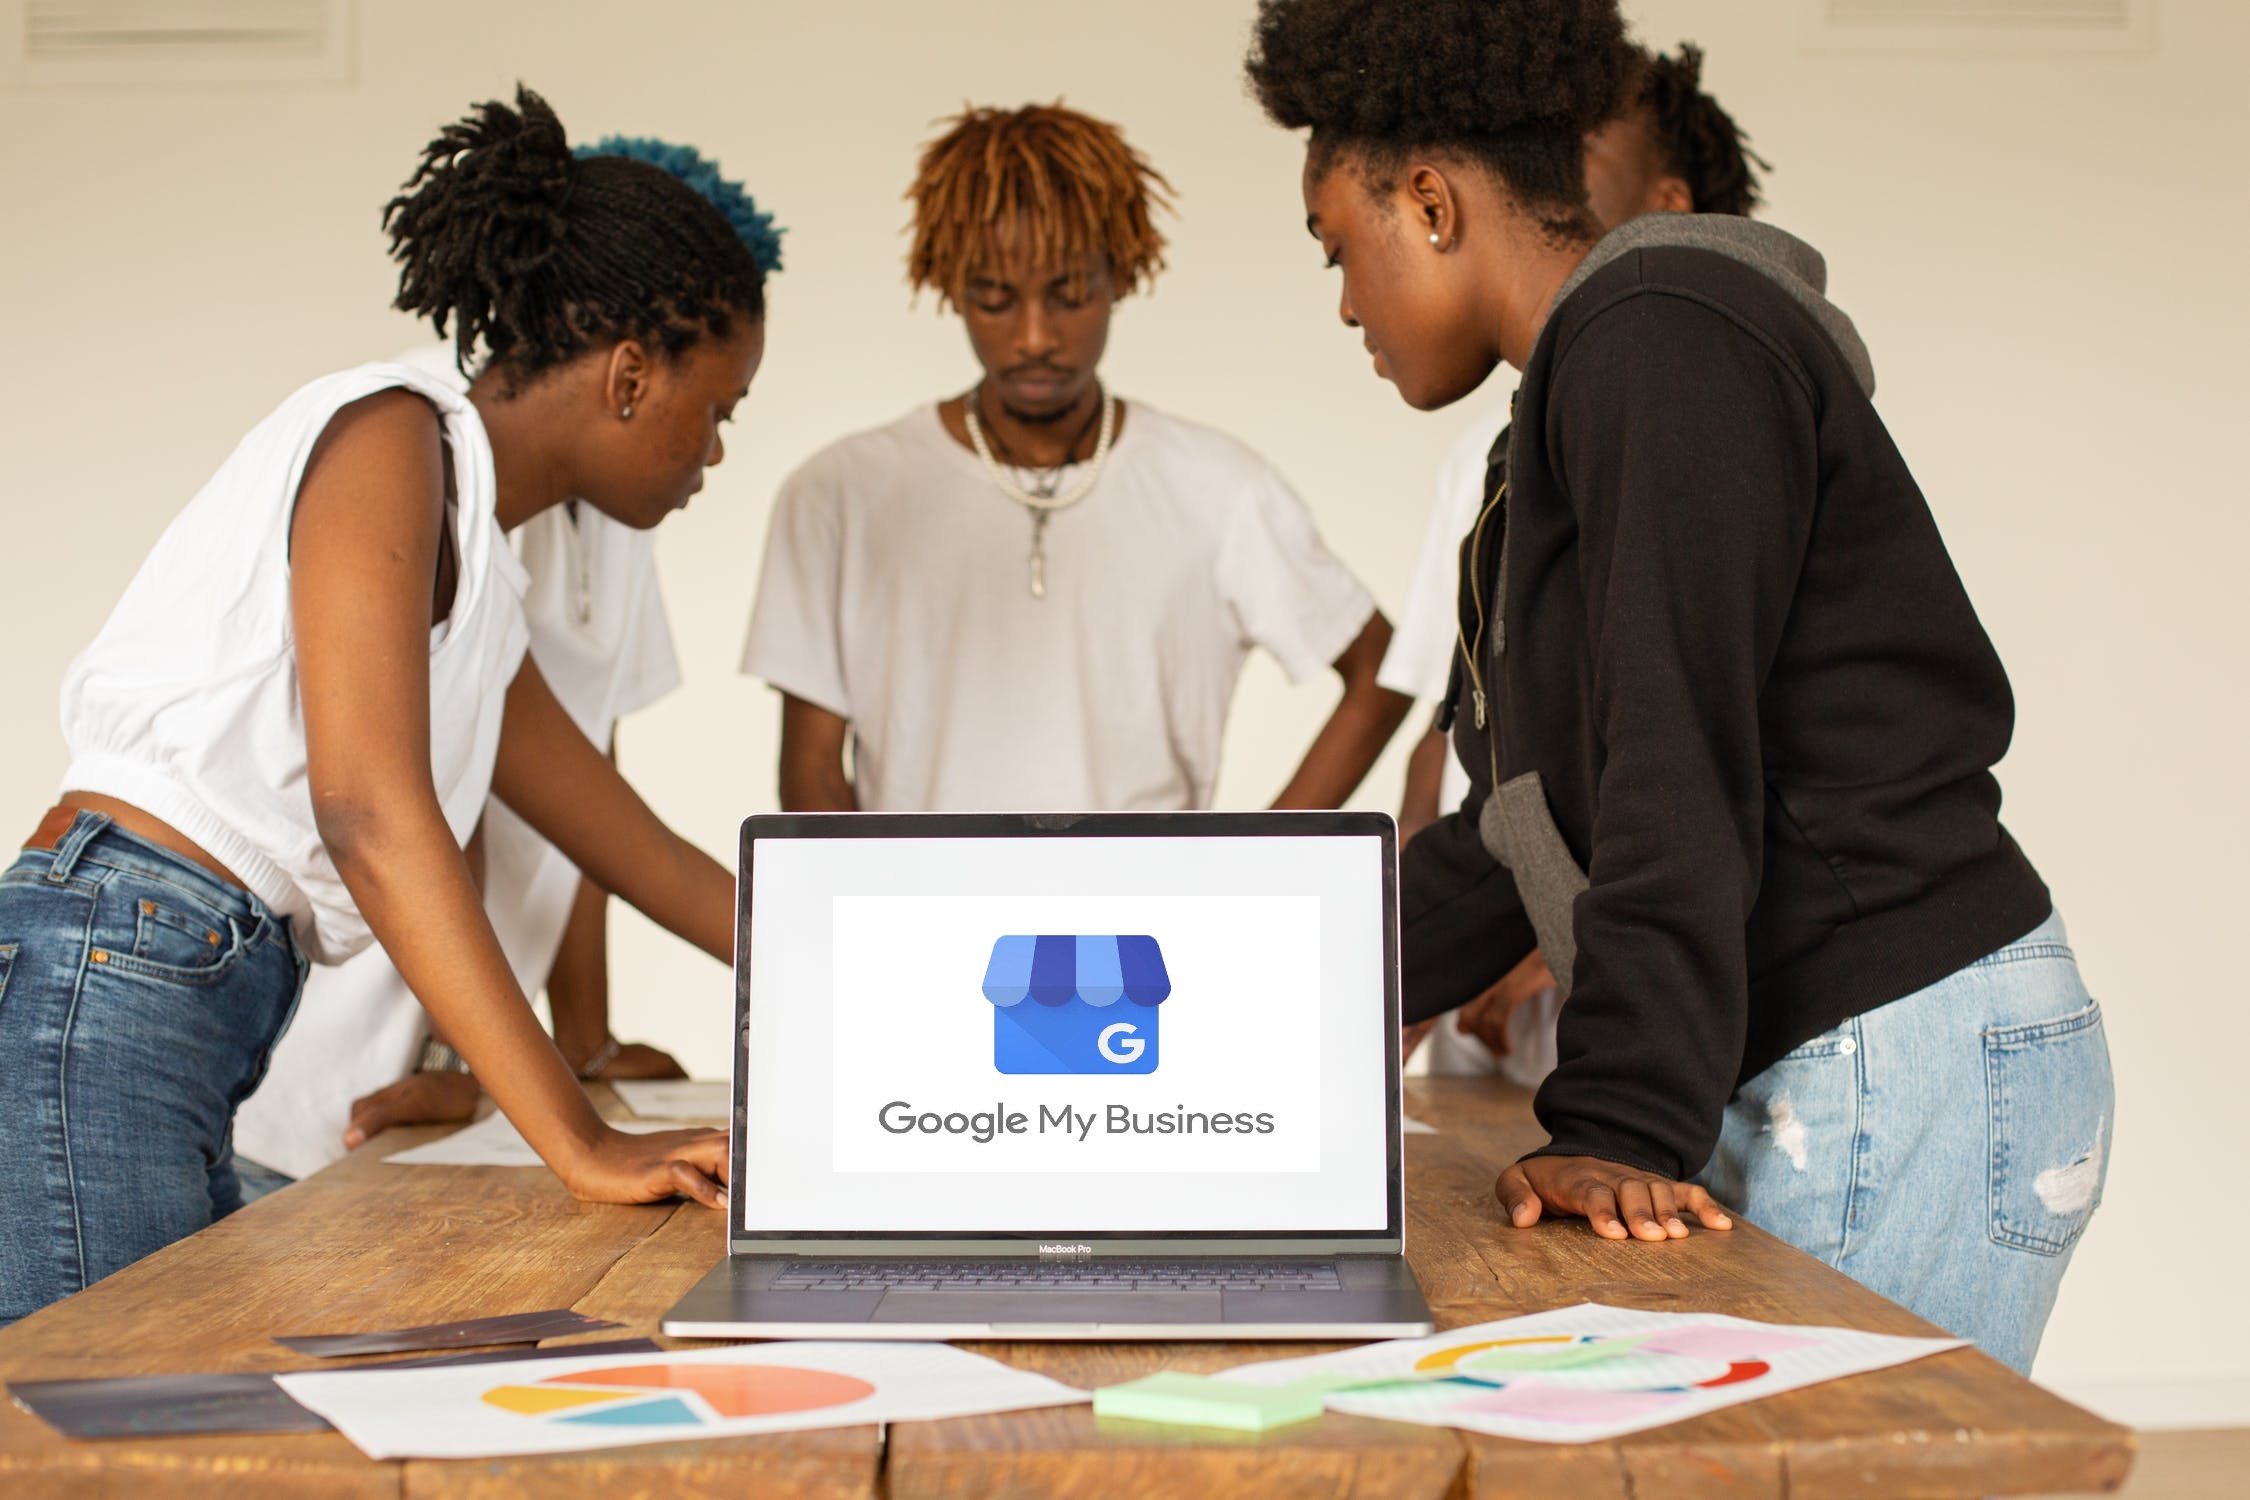 Die 5 Wesentlichen Vorteile Von Google My Business